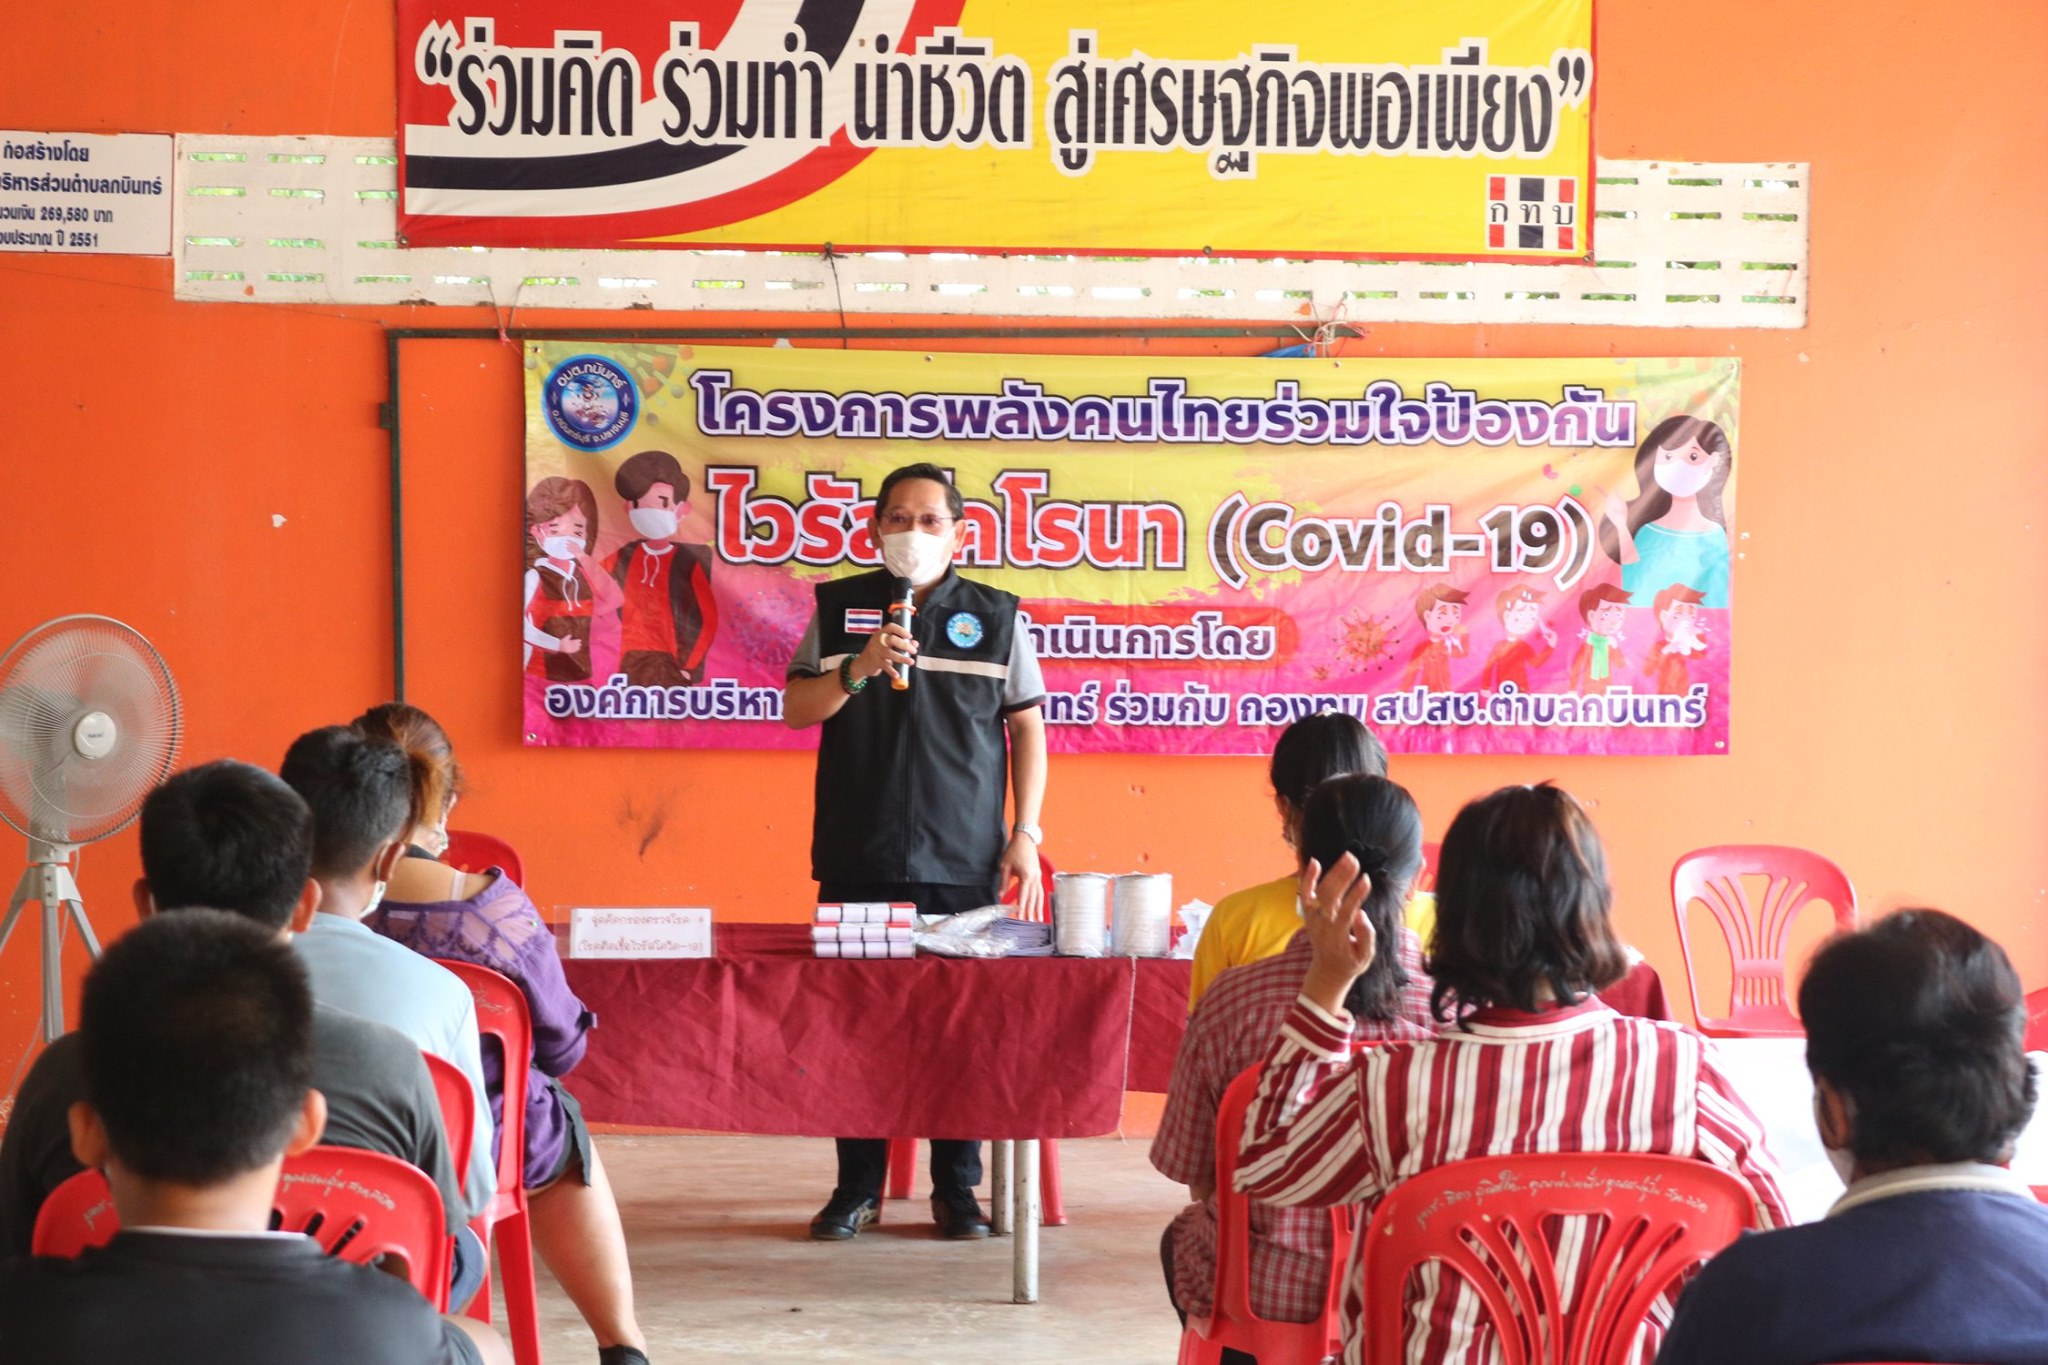 อบต.กบินทร์จัดโครงการพลังคนไทยร่วมใจป้องกันไวรัสโคโรน่า (โควิด 19) โดยการมอบหน้ากากอนามัยและเจลแอลกอฮอล์ ให้กับทุกหมู่บ้าน